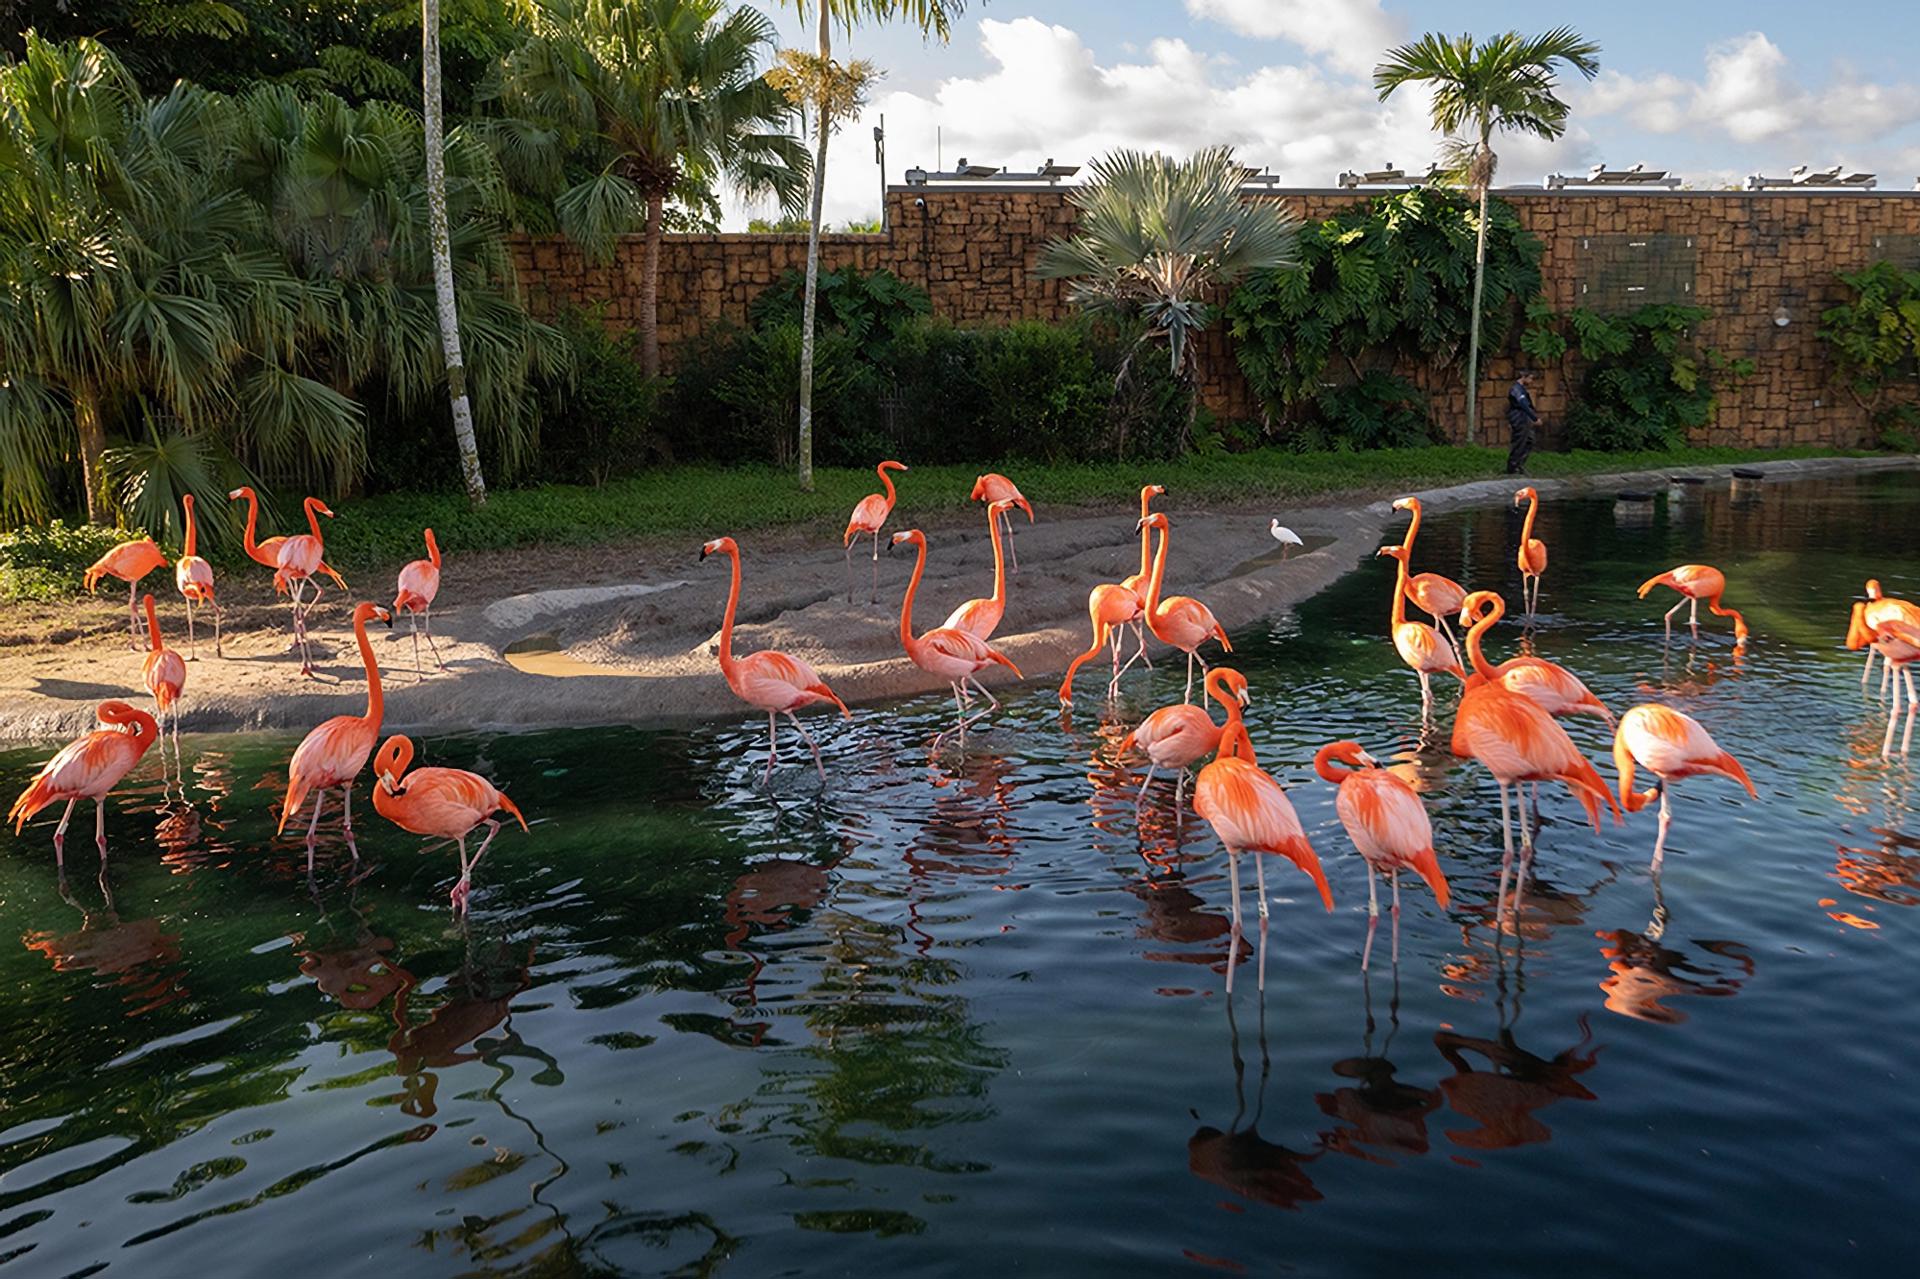 Fotografía cedida por el Zoológico de Miami donde se muestra a un grupo de flamencos caribeños o americanos (Phoenicopterus ruber) mientras se refrescan este jueves en su hábitat en el zoológico, situado en el suroeste de Miami, Florida (EEUU). EFE/Ron Magill/Zoo Miami /SOLO USO EDITORIAL /NO VENTAS /SOLO DISPONIBLE PARA ILUSTRAR LA NOTICIA QUE ACOMPAÑA /CRÉDITO OBLIGATORIO